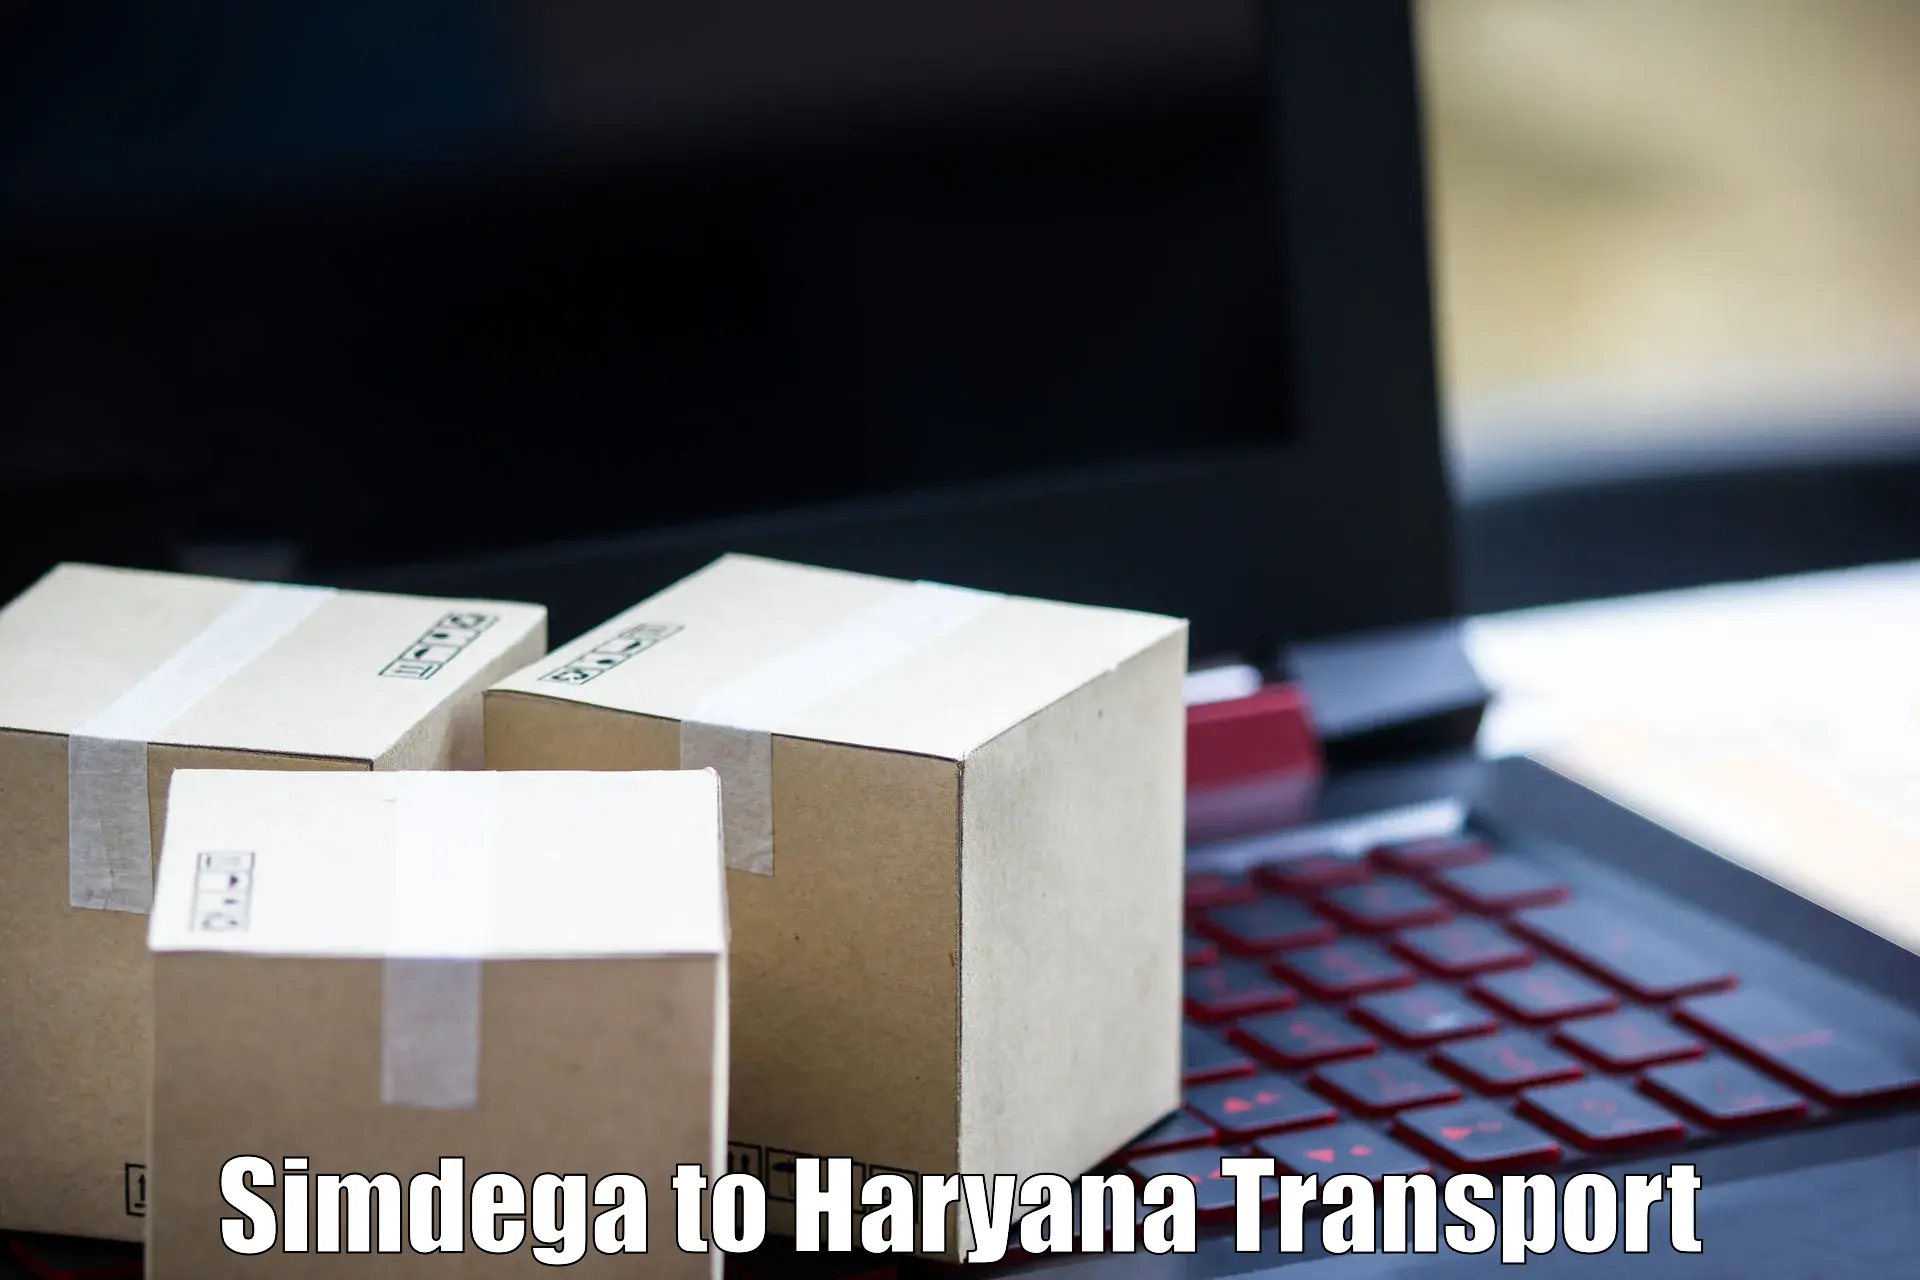 Online transport booking Simdega to Dharuhera